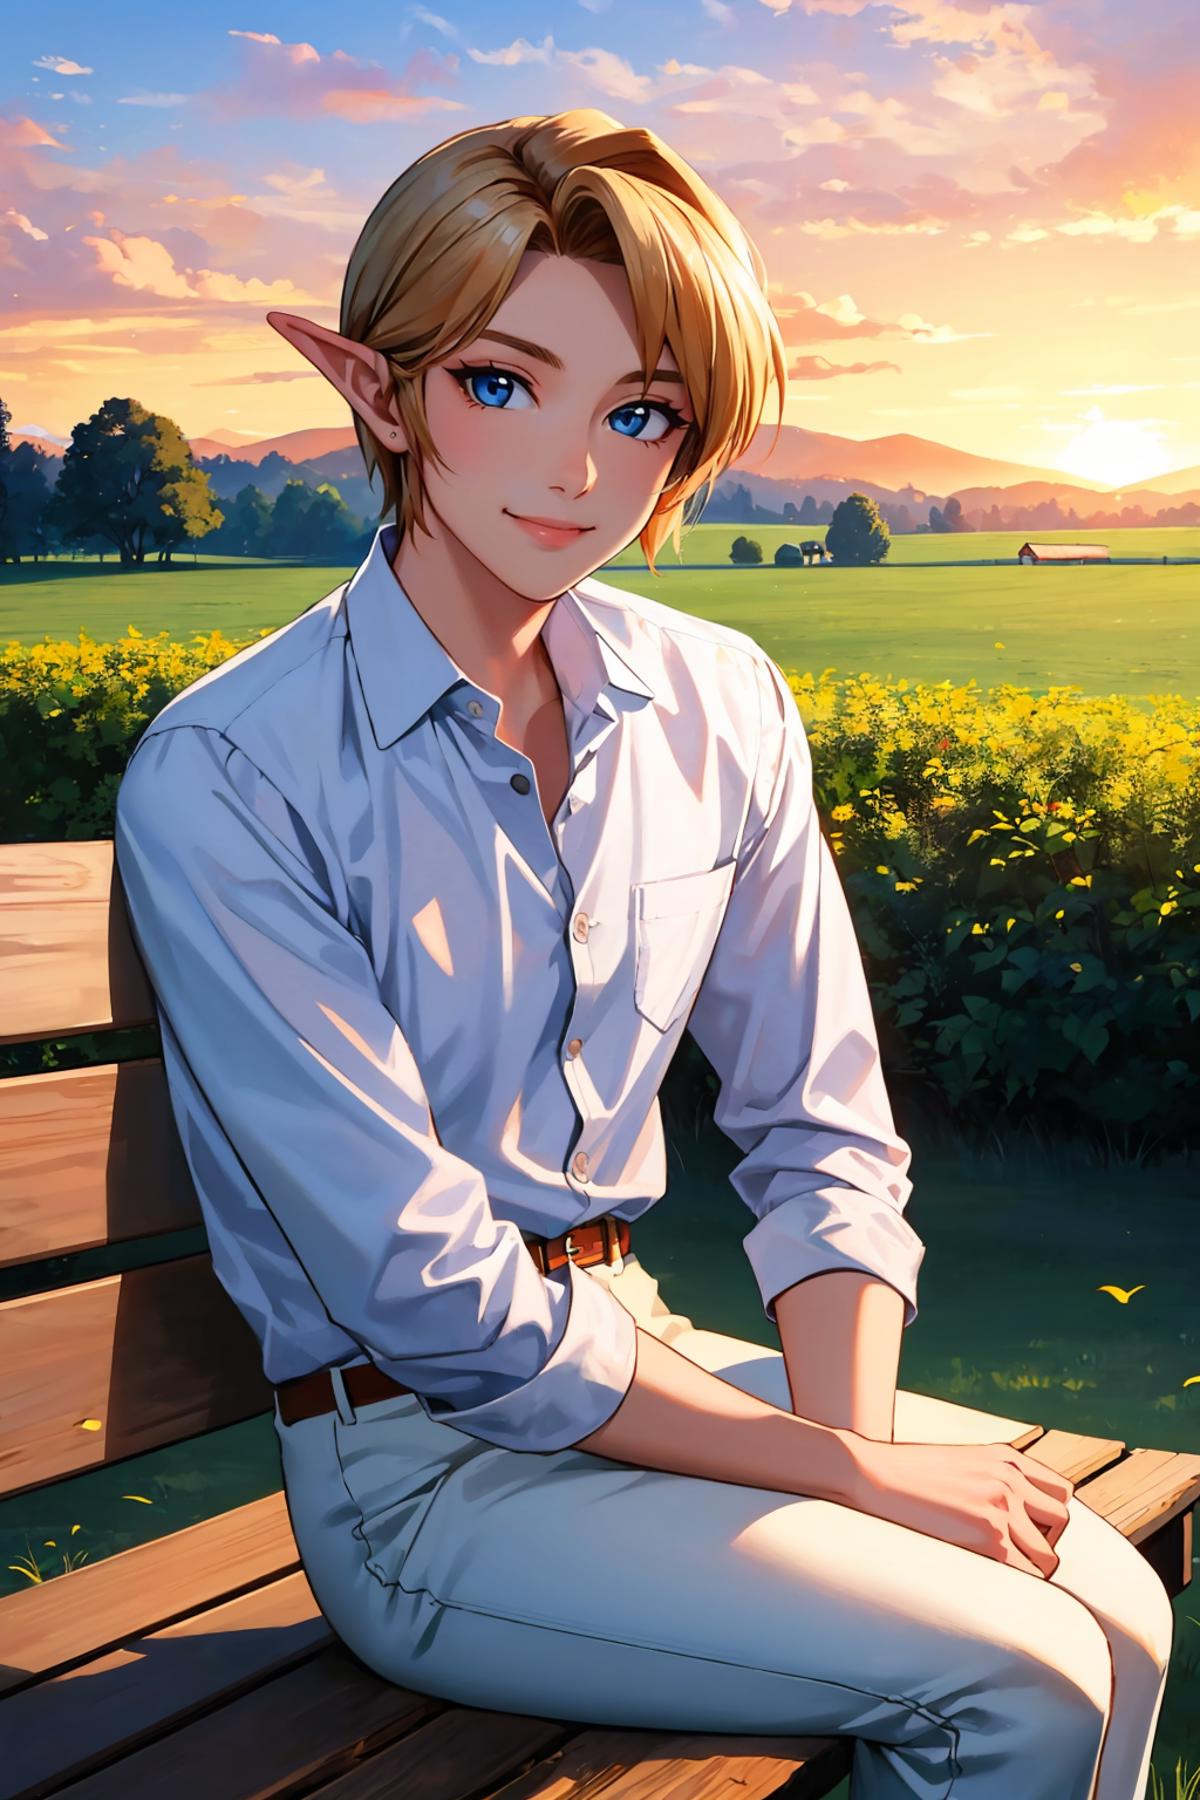 Link (The Legend of Zelda: Ocarina of Time) LoRA image by novowels